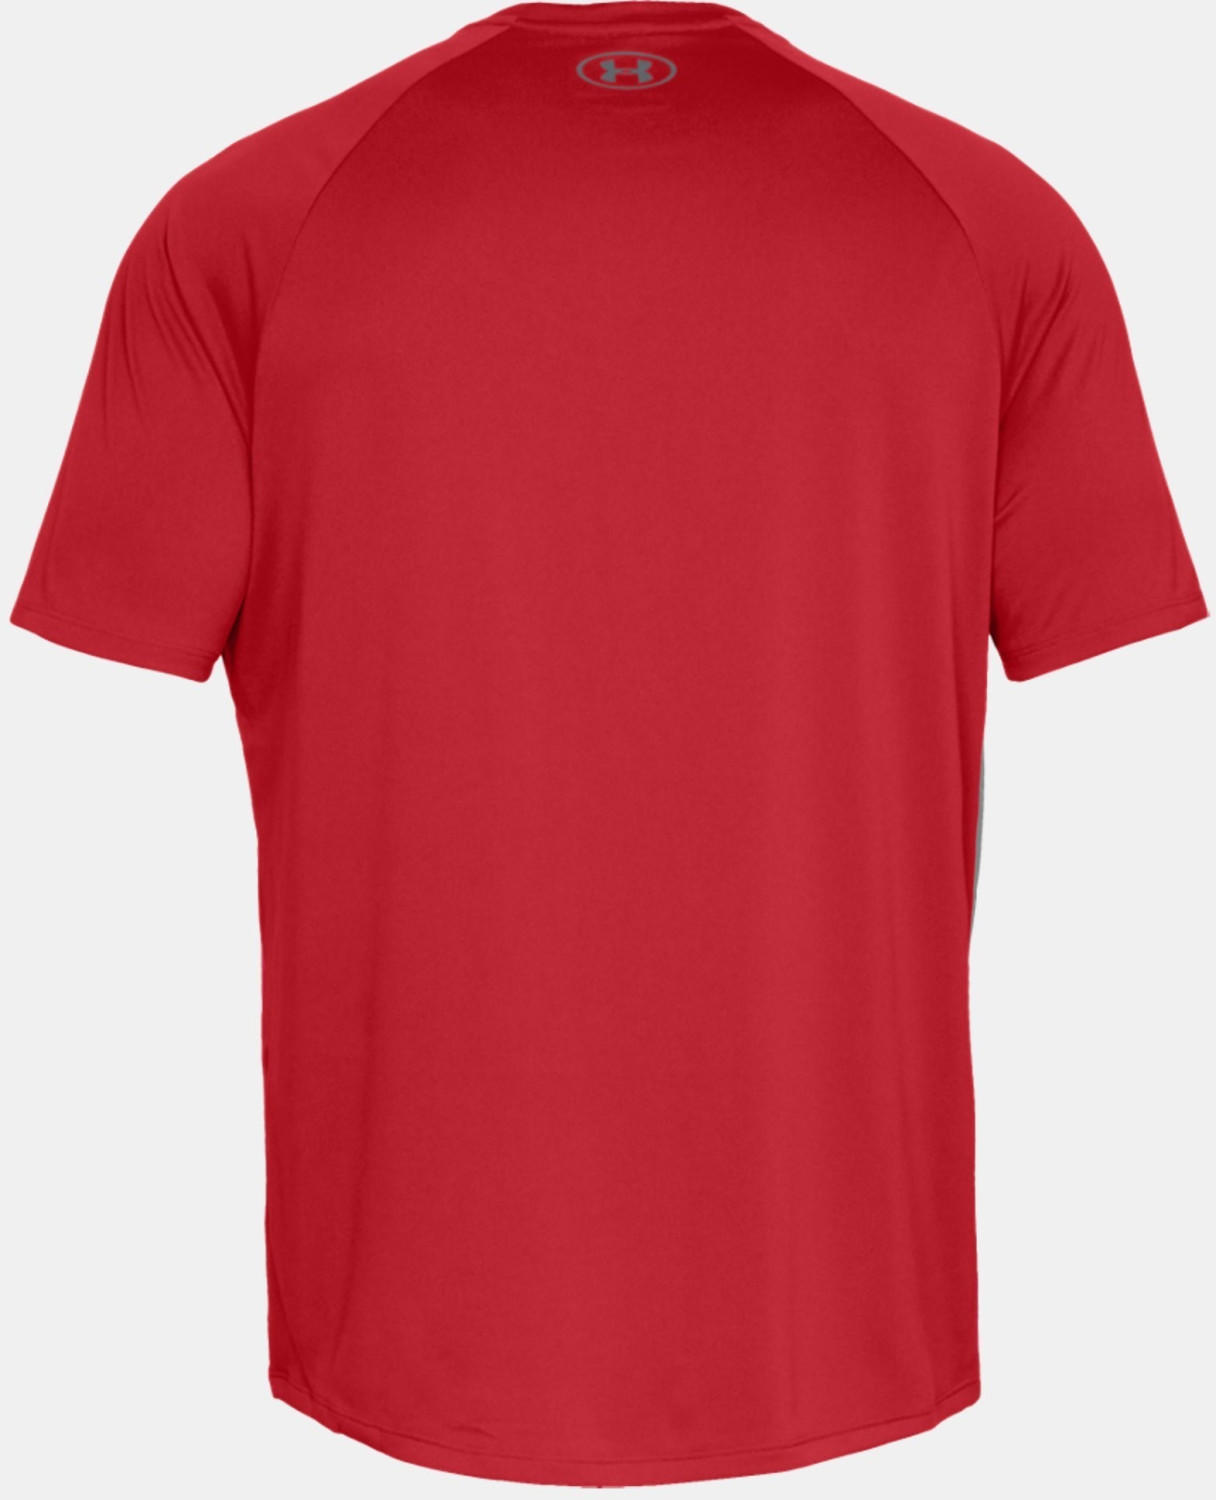 Under Armour UA Tech T-Shirt red